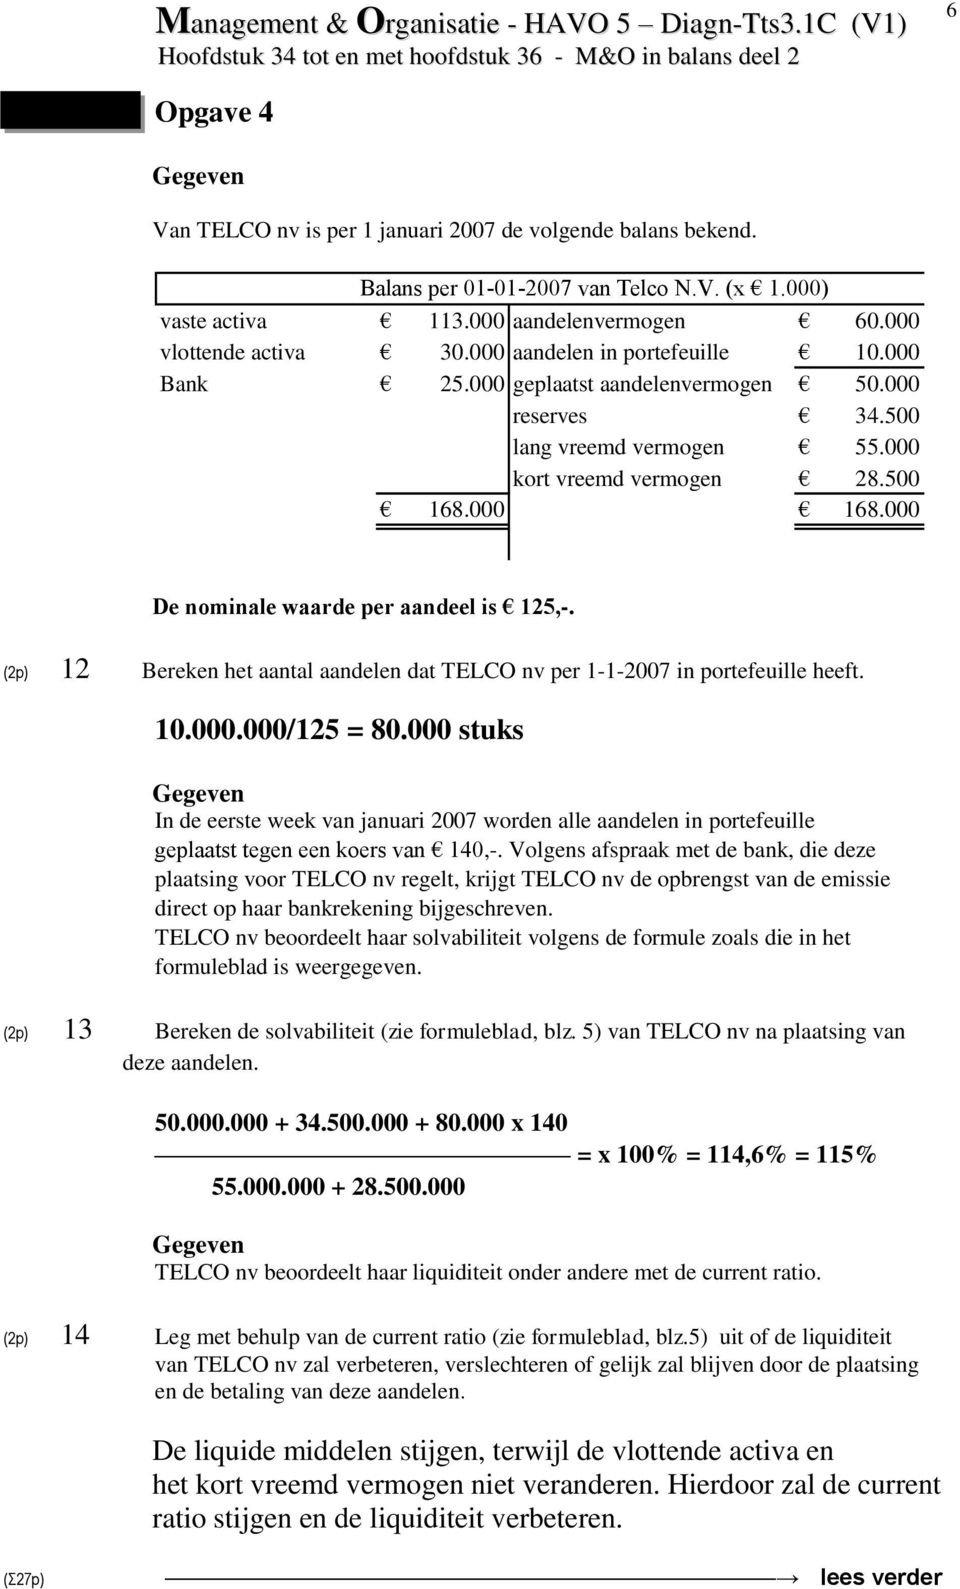 000 De nominale waarde per aandeel is 125,-. (2p) 12 Bereken het aantal aandelen dat TELCO nv per 1-1-2007 in portefeuille heeft. 10.000.000/125 = 80.